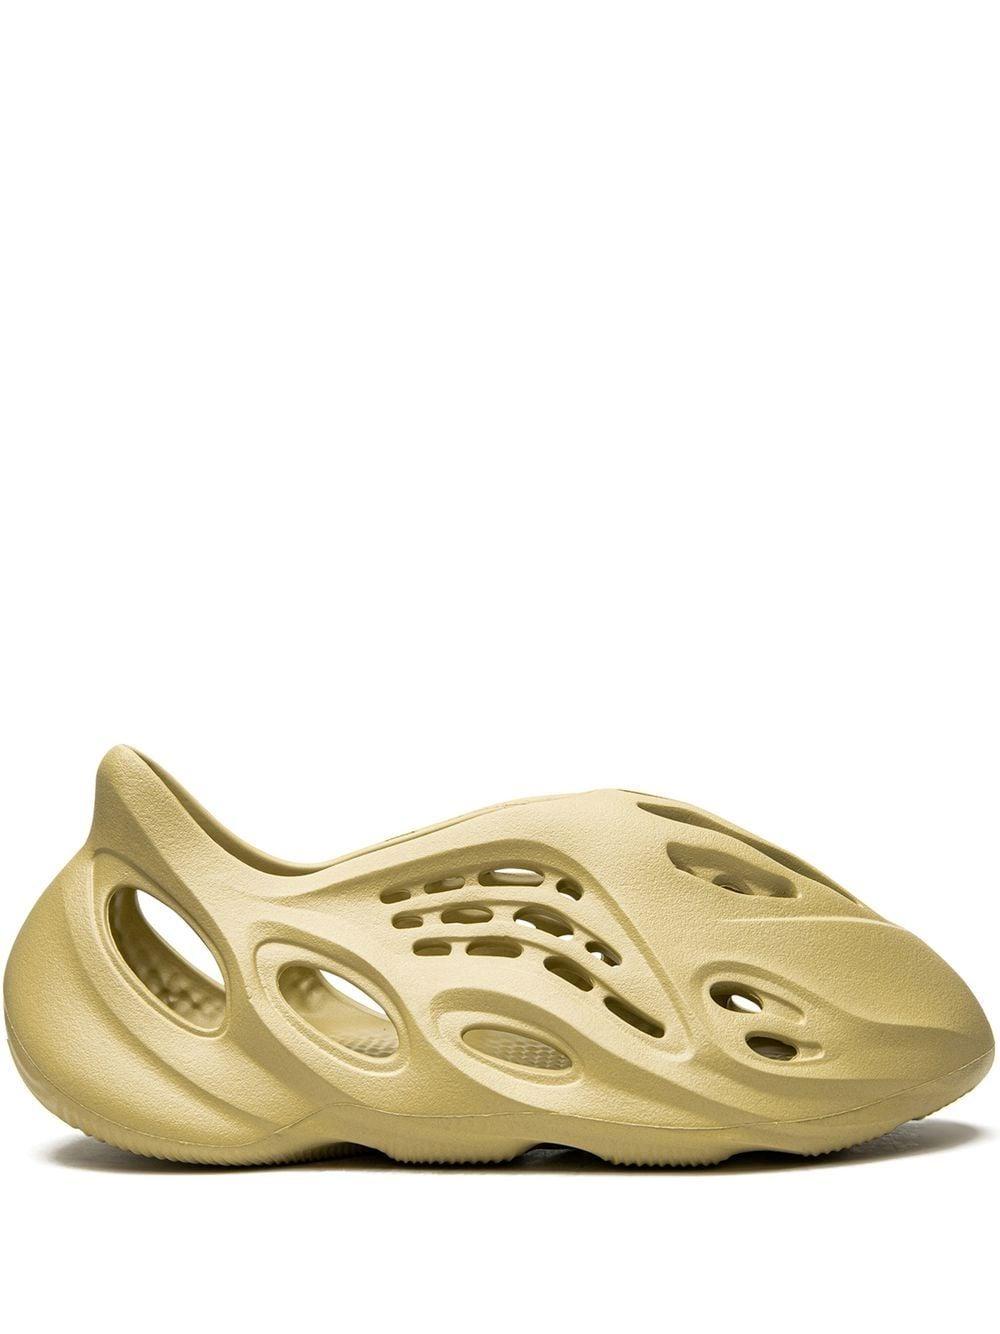 Yeezy Yeezy Foam Runner "ochre" Sneakers for Men | Lyst